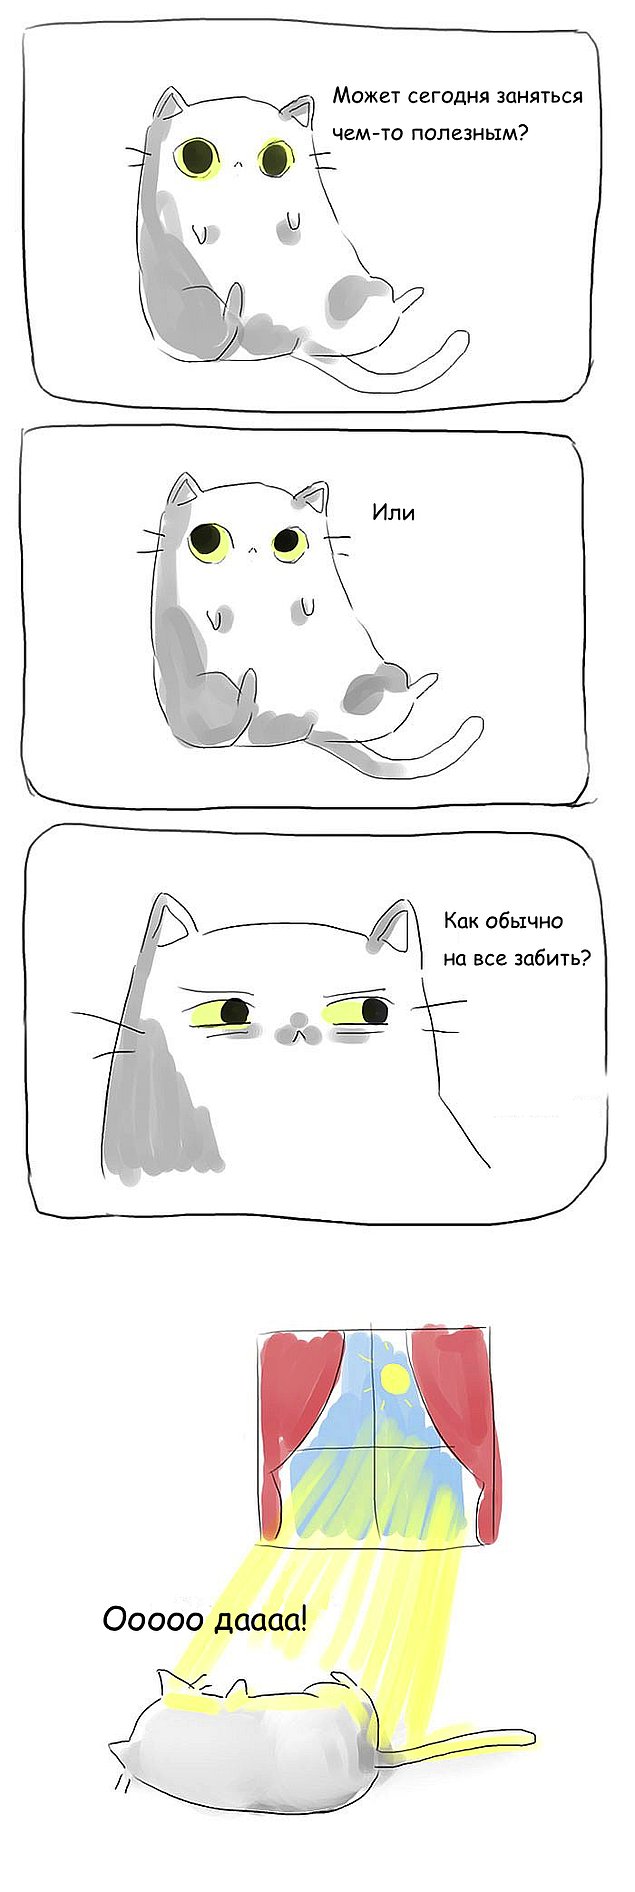 Проблемы жизни с котом в забавных комиксах